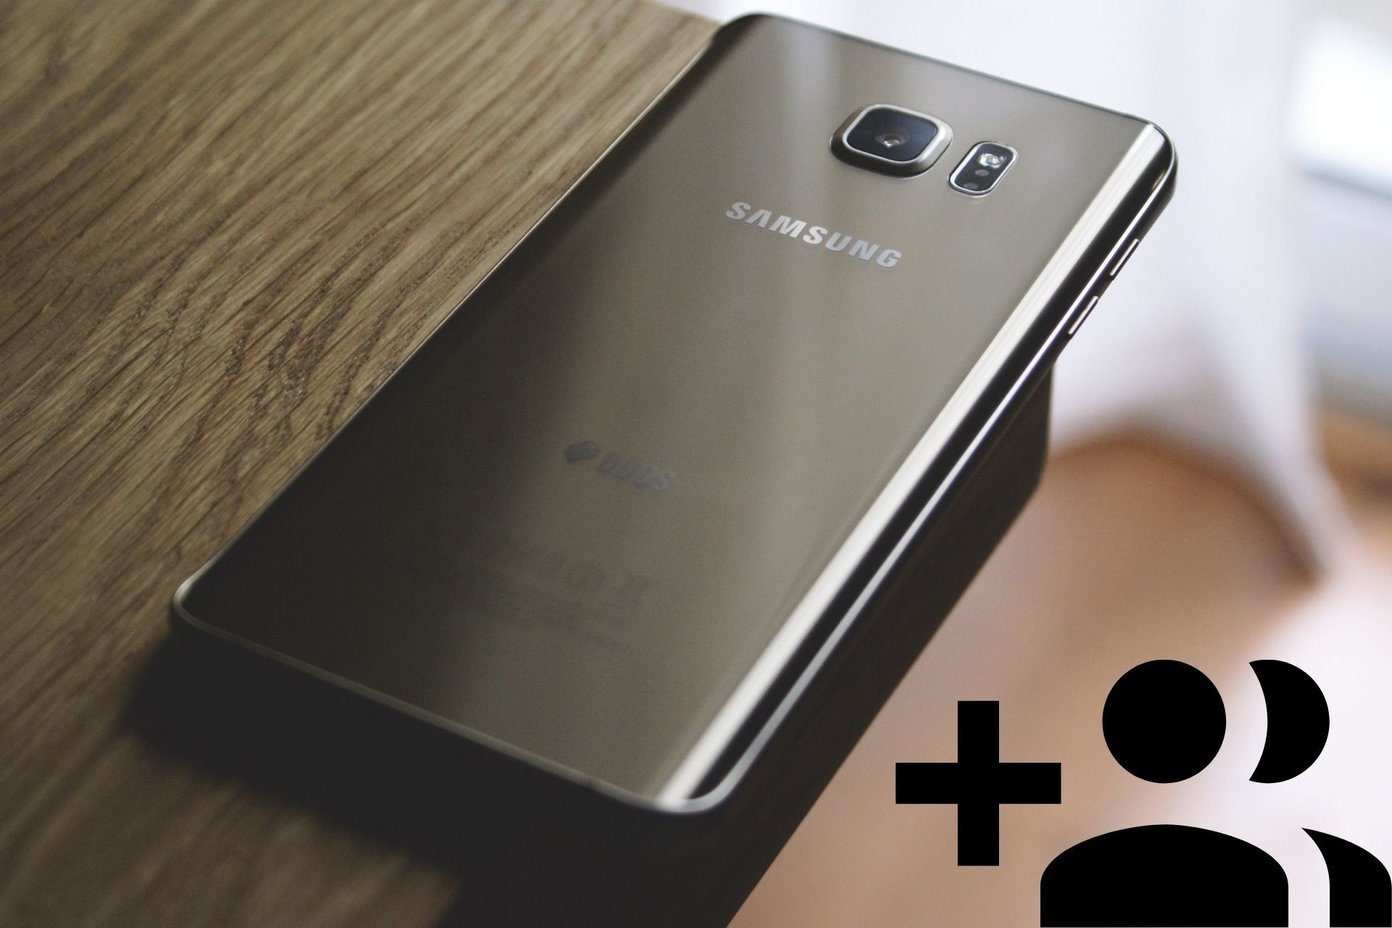 Agregar Eliminar y Eliminar la cuenta de Samsung de los teléfonos Android